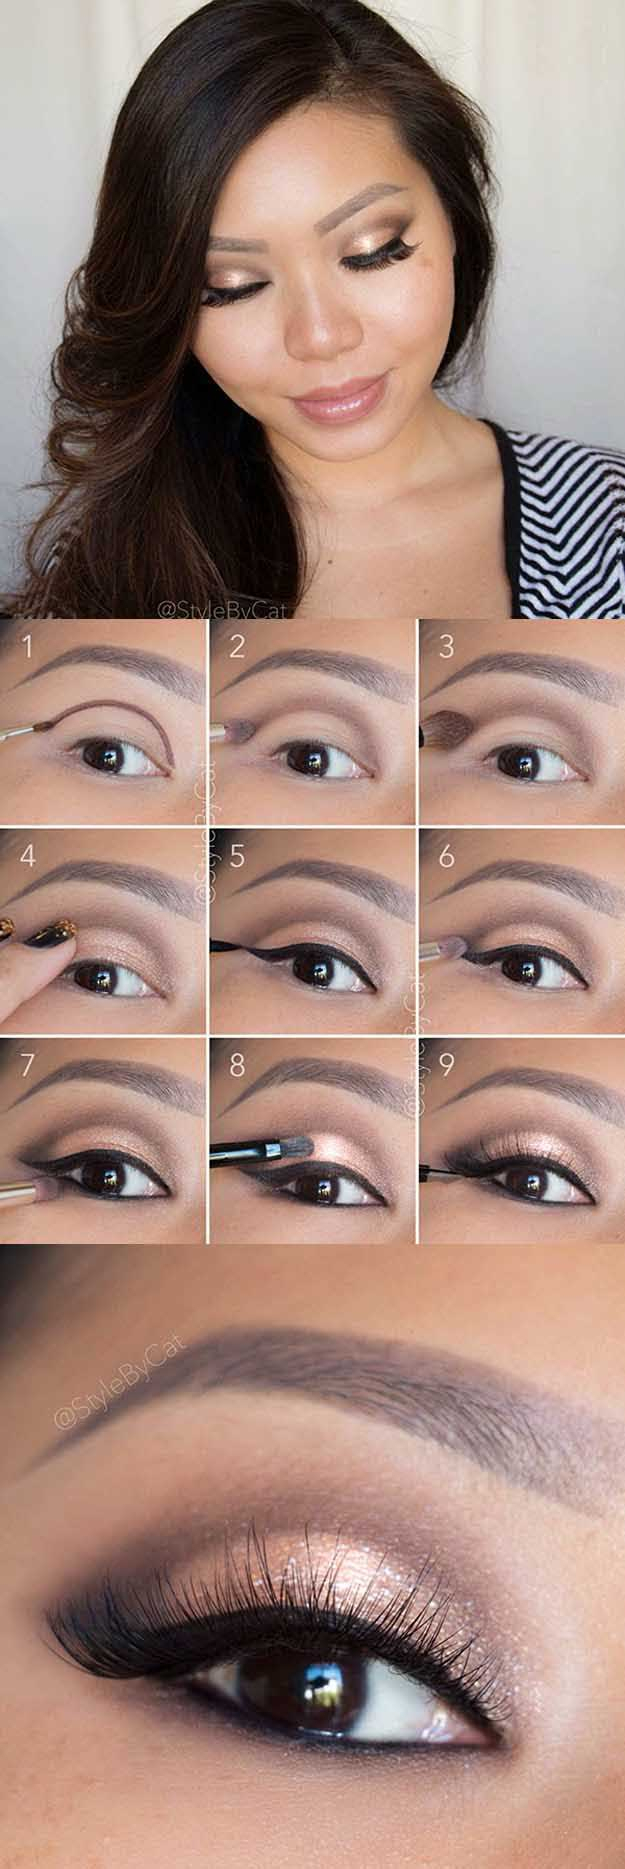 Asian Eye Makeup 35 Best Makeup Tips For Asian Women The Goddess